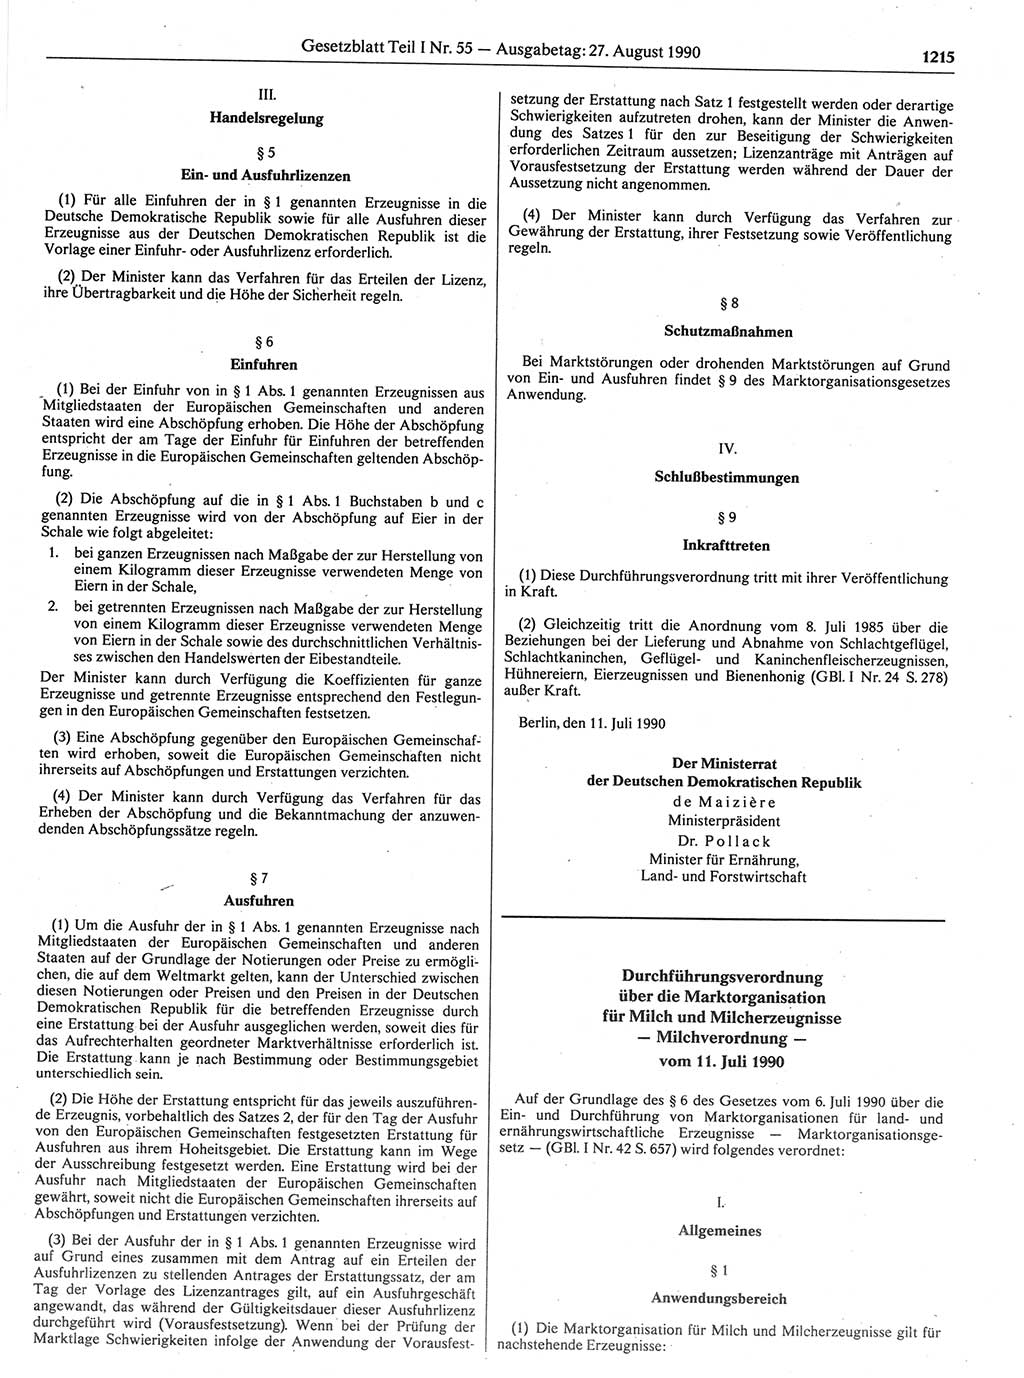 Gesetzblatt (GBl.) der Deutschen Demokratischen Republik (DDR) Teil Ⅰ 1990, Seite 1215 (GBl. DDR Ⅰ 1990, S. 1215)